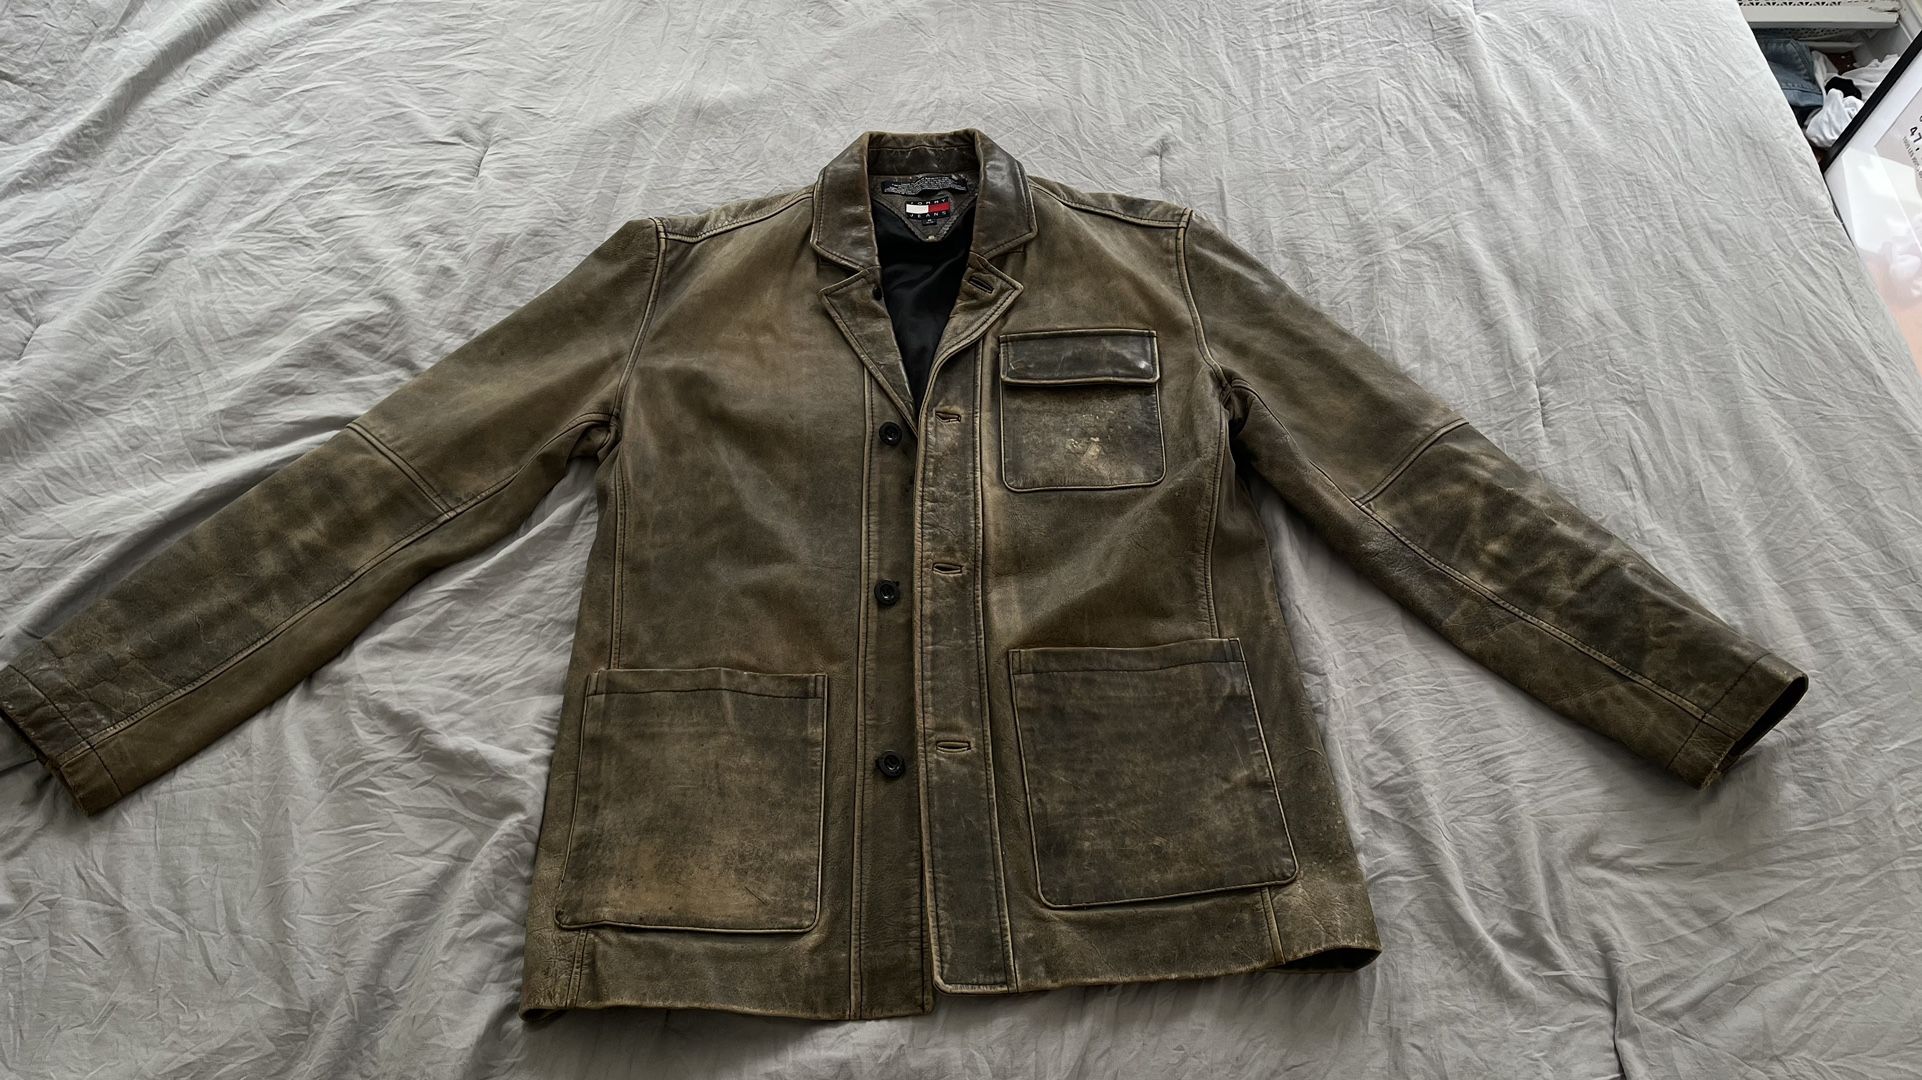 Vintage leather Tommy Hilfiger faded jacket